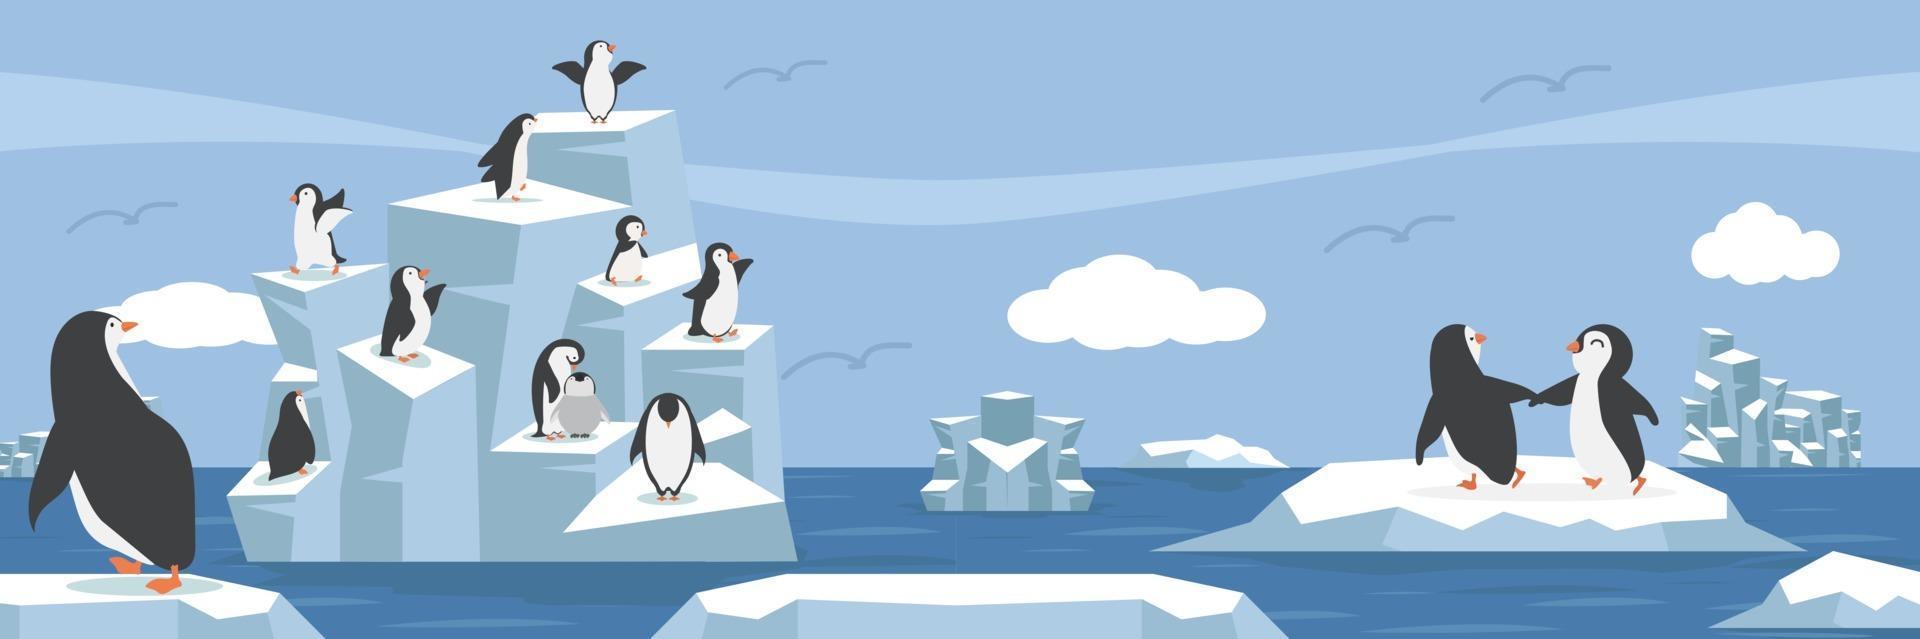 polo nord artico con gruppo di pinguini paesaggio vettore